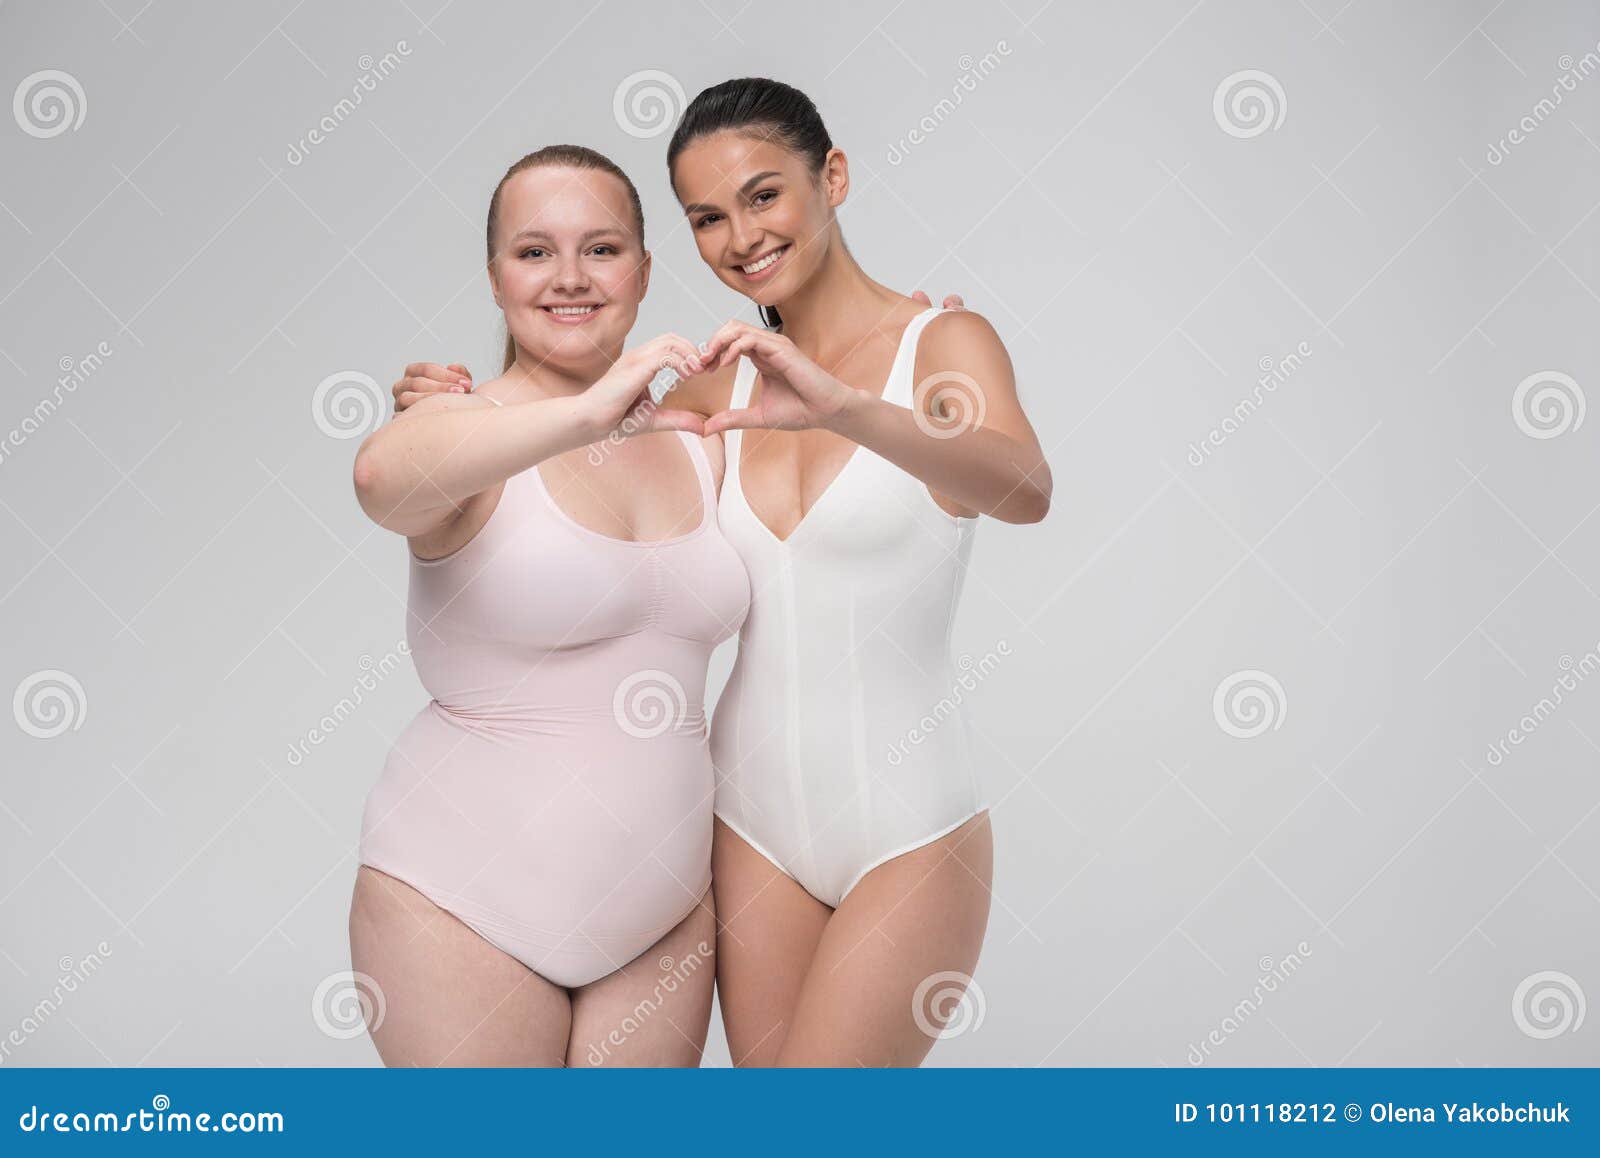 Fat Vs Skinny Lesbians